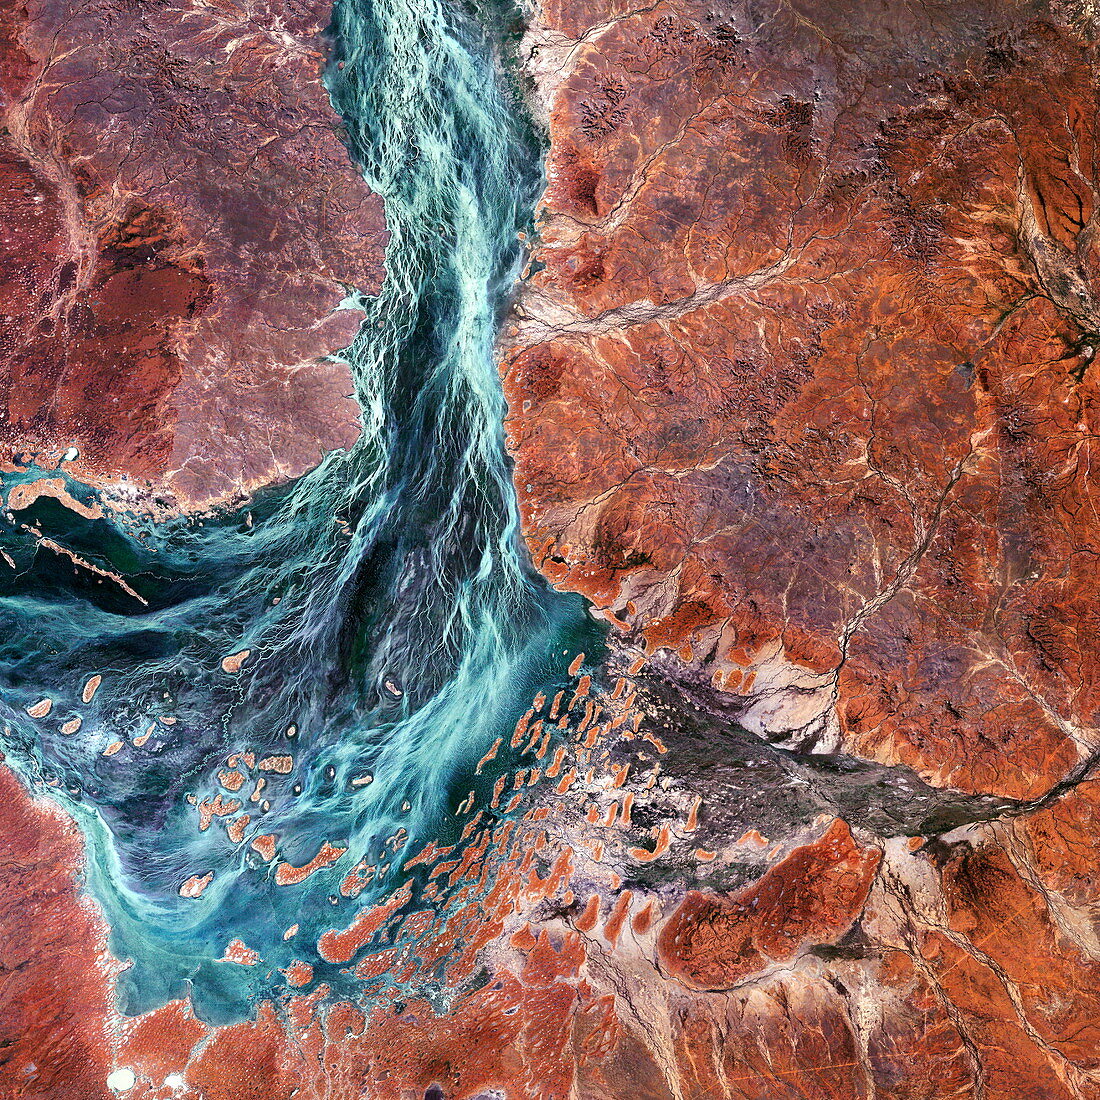 Salt lake in the Australian desert